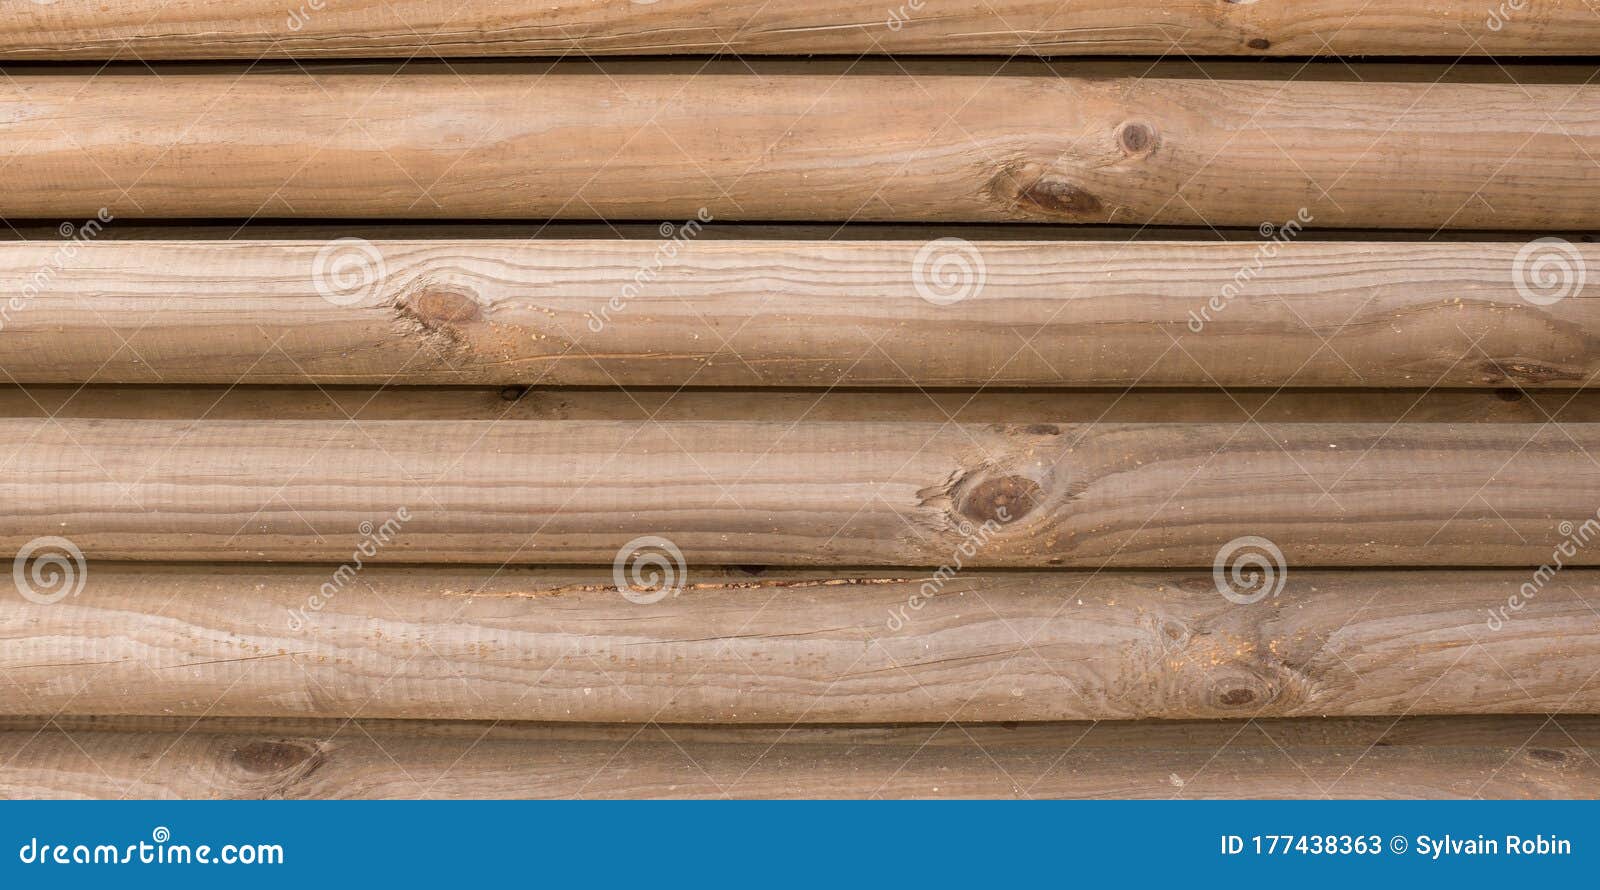 Ván gỗ tròn: Ván gỗ tròn là sản phẩm tuyệt vời cho những ai yêu thích sự độc đáo và đẳng cấp. Chúng được chế tác từ các loại gỗ đa dạng và có độ bền cao, mang lại sự ấn tượng cho không gian sống của bạn. Những tấm ván gỗ này còn được sử dụng để trang trí và xây dựng đồ nội thất độc đáo, phù hợp với nhiều phong cách trang trí.